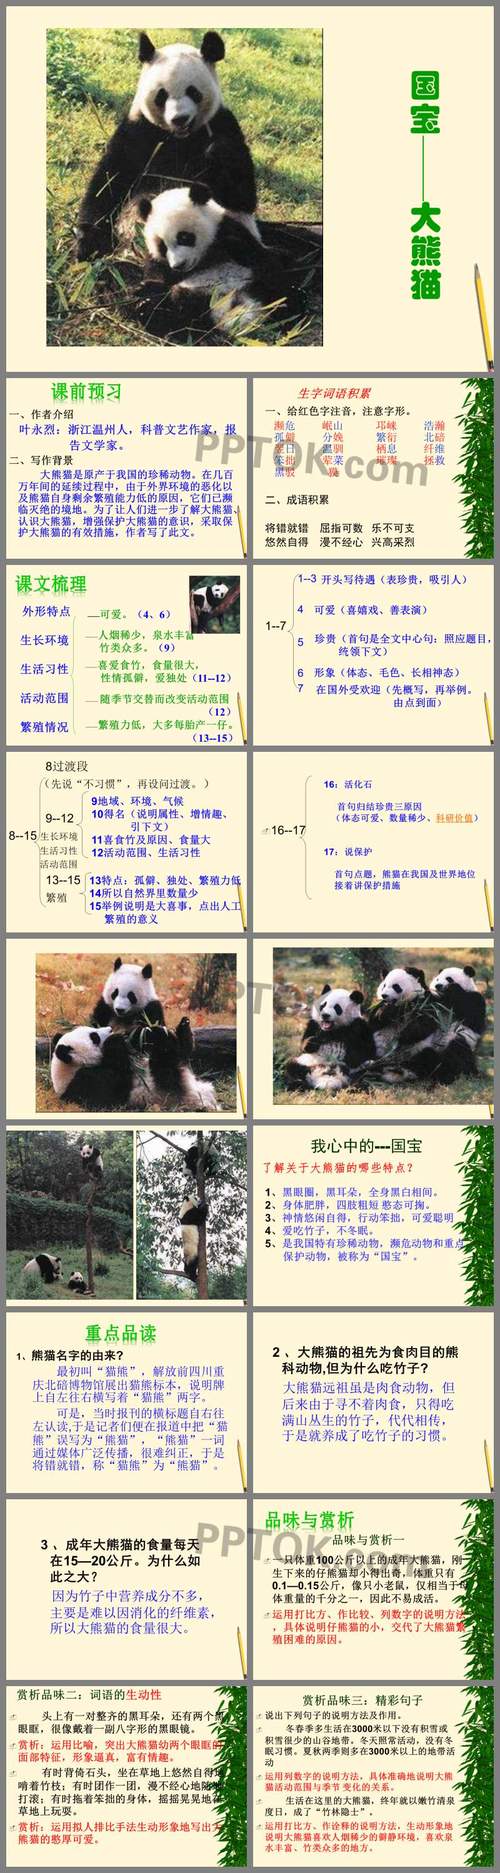 熊猫的习性特点描写